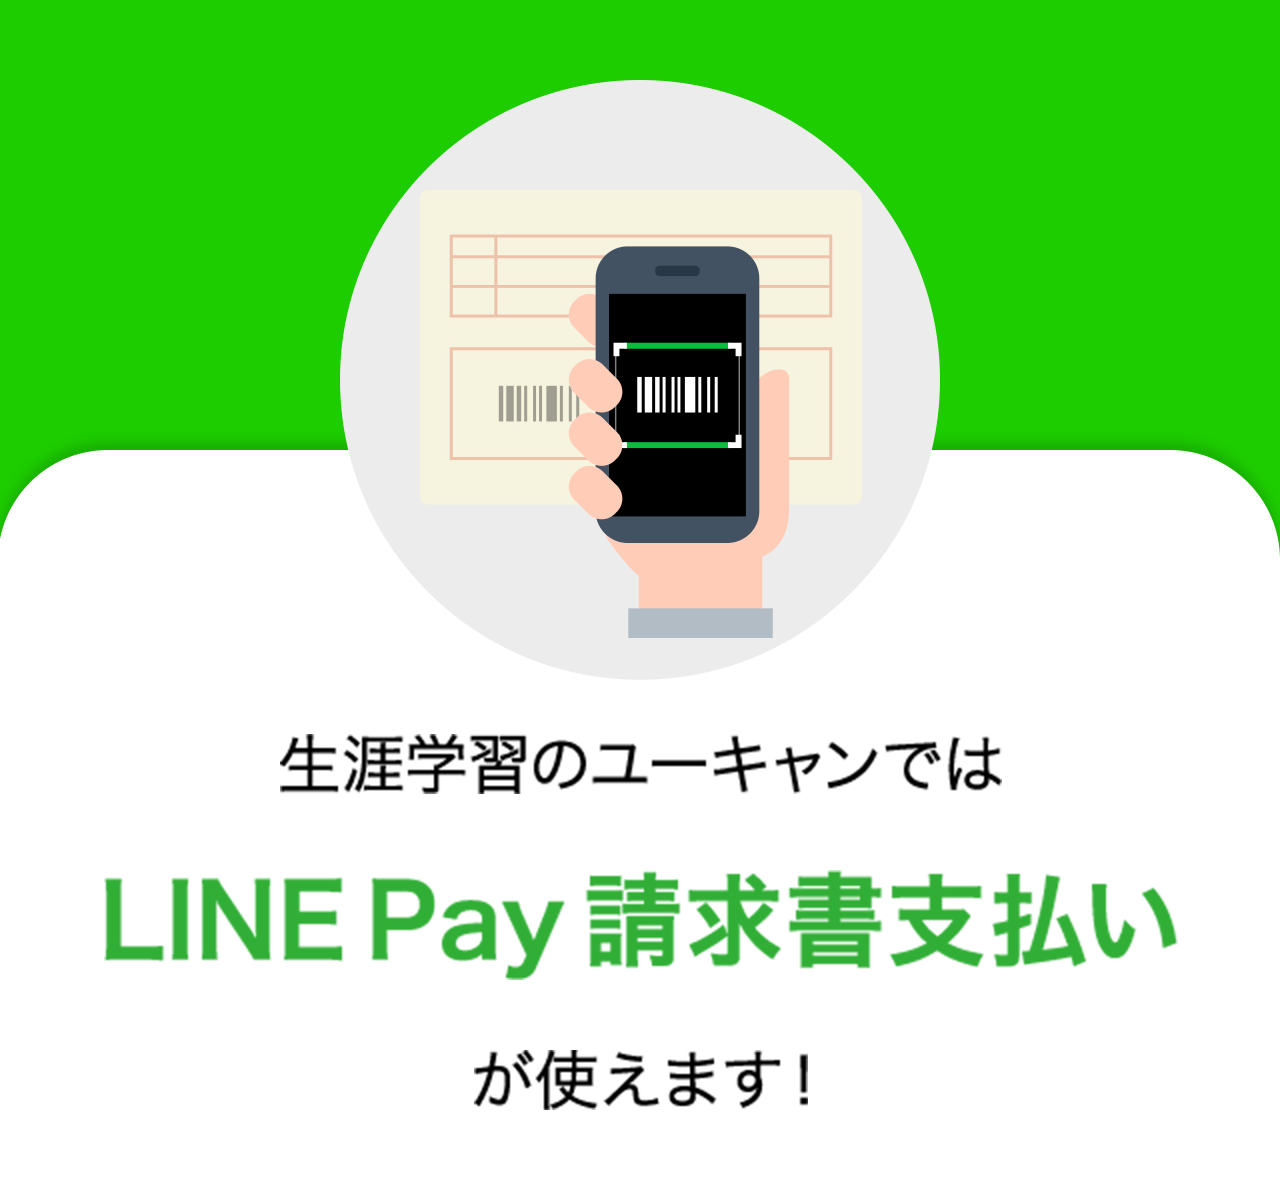 生涯学習のユーキャンではLINE Pay 請求書支払いが使えます！